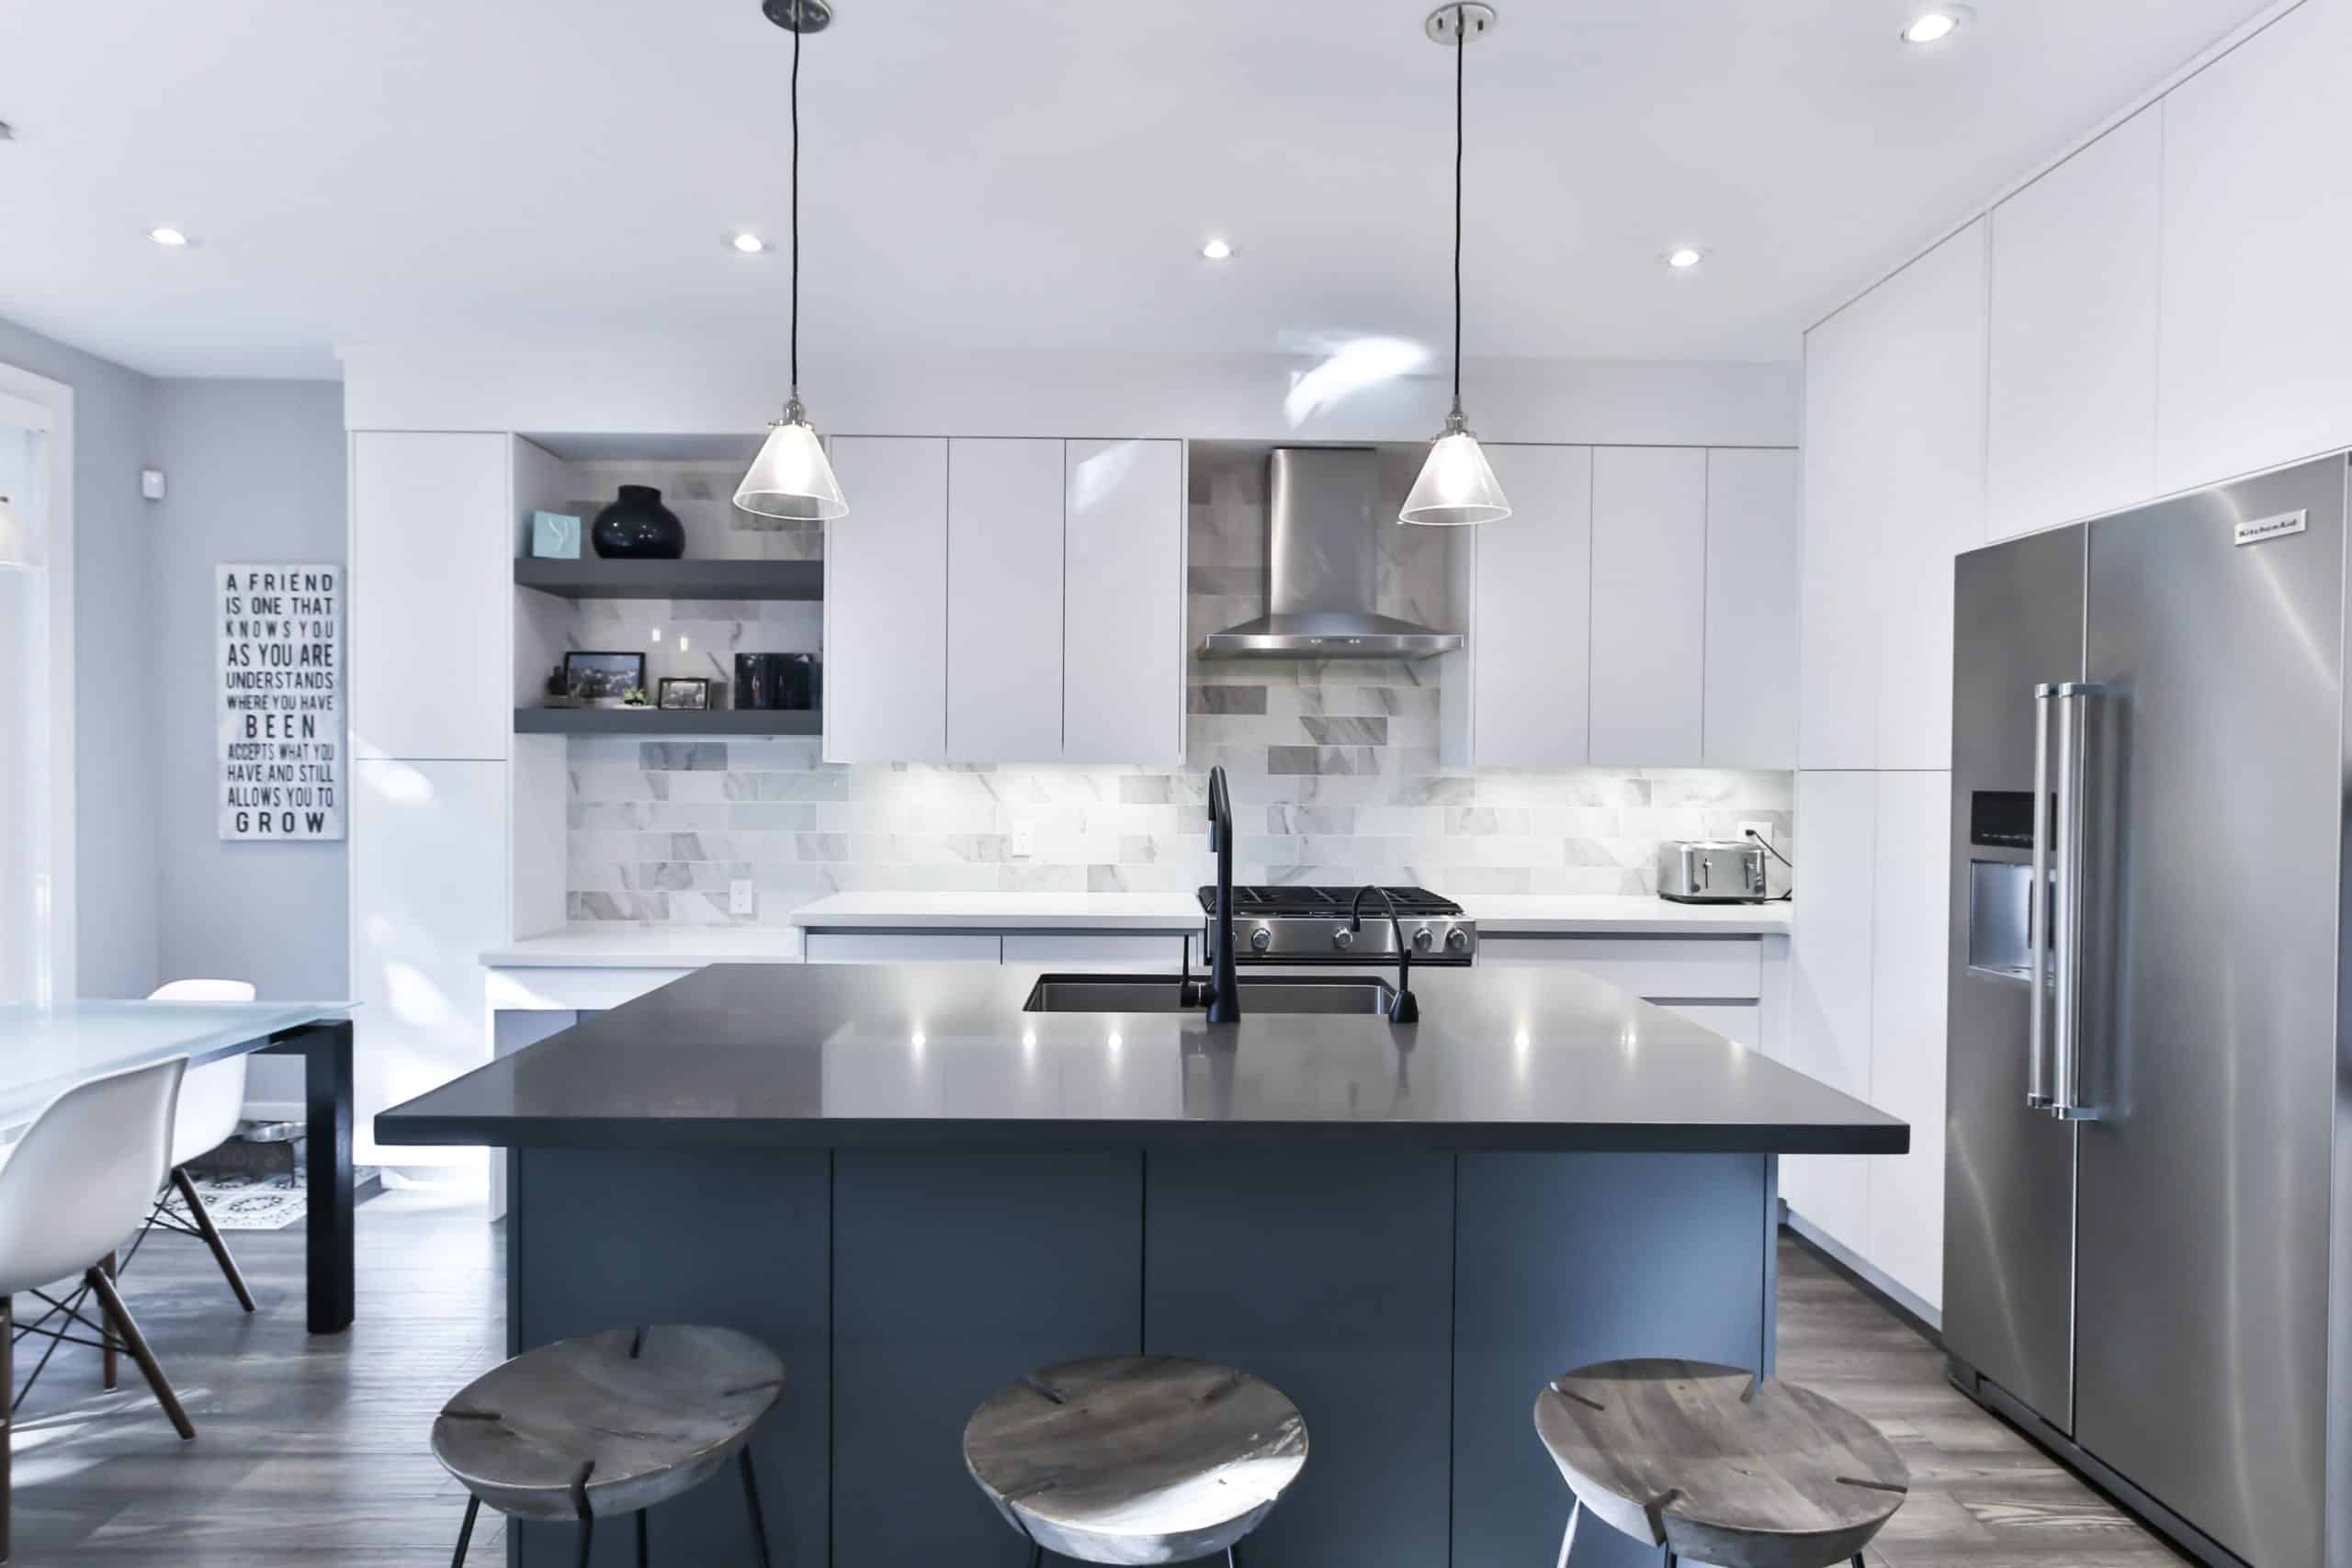 Classy Kitchen Design: White Appliances Guide